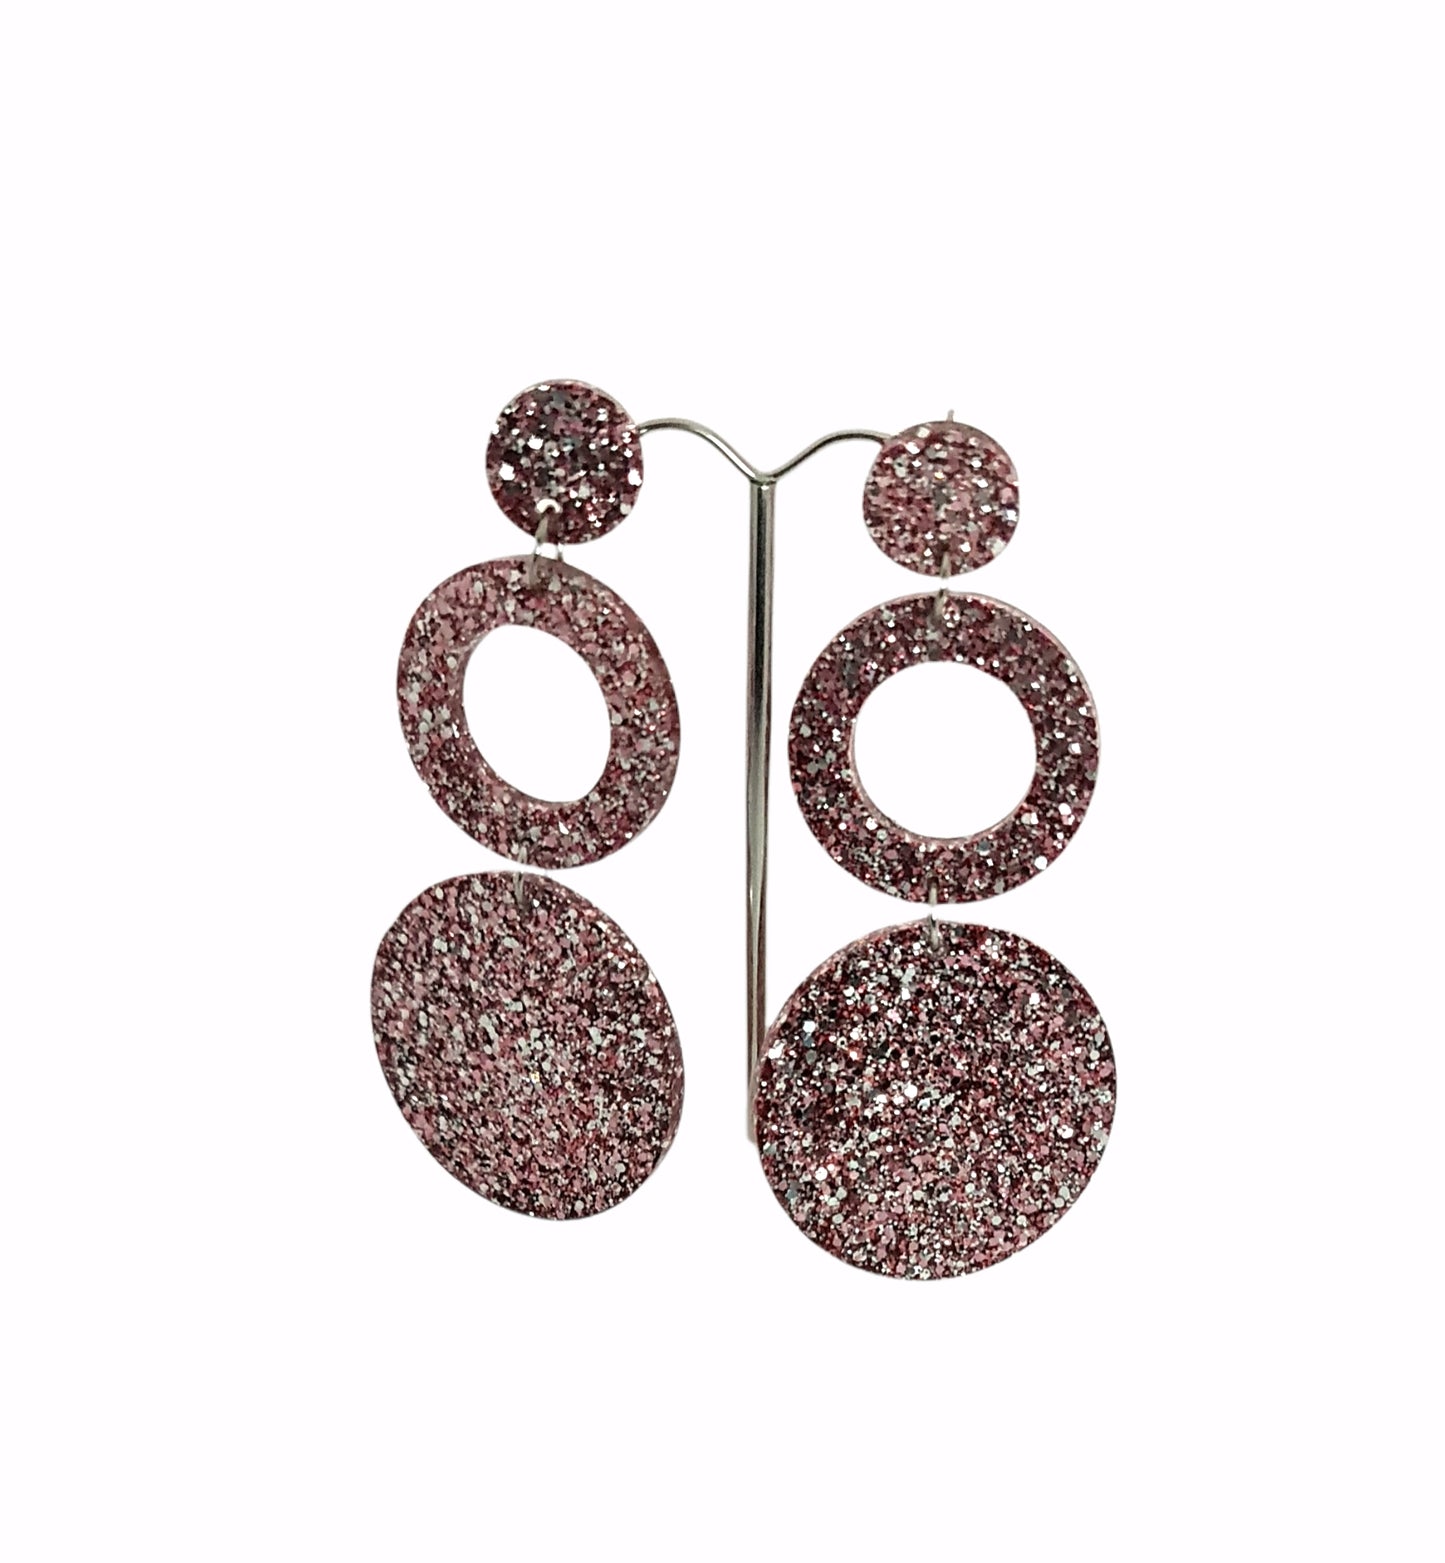 Circle Hoop Earrings, Salmon Pink Silver Glitter Dangle Statement Earrings